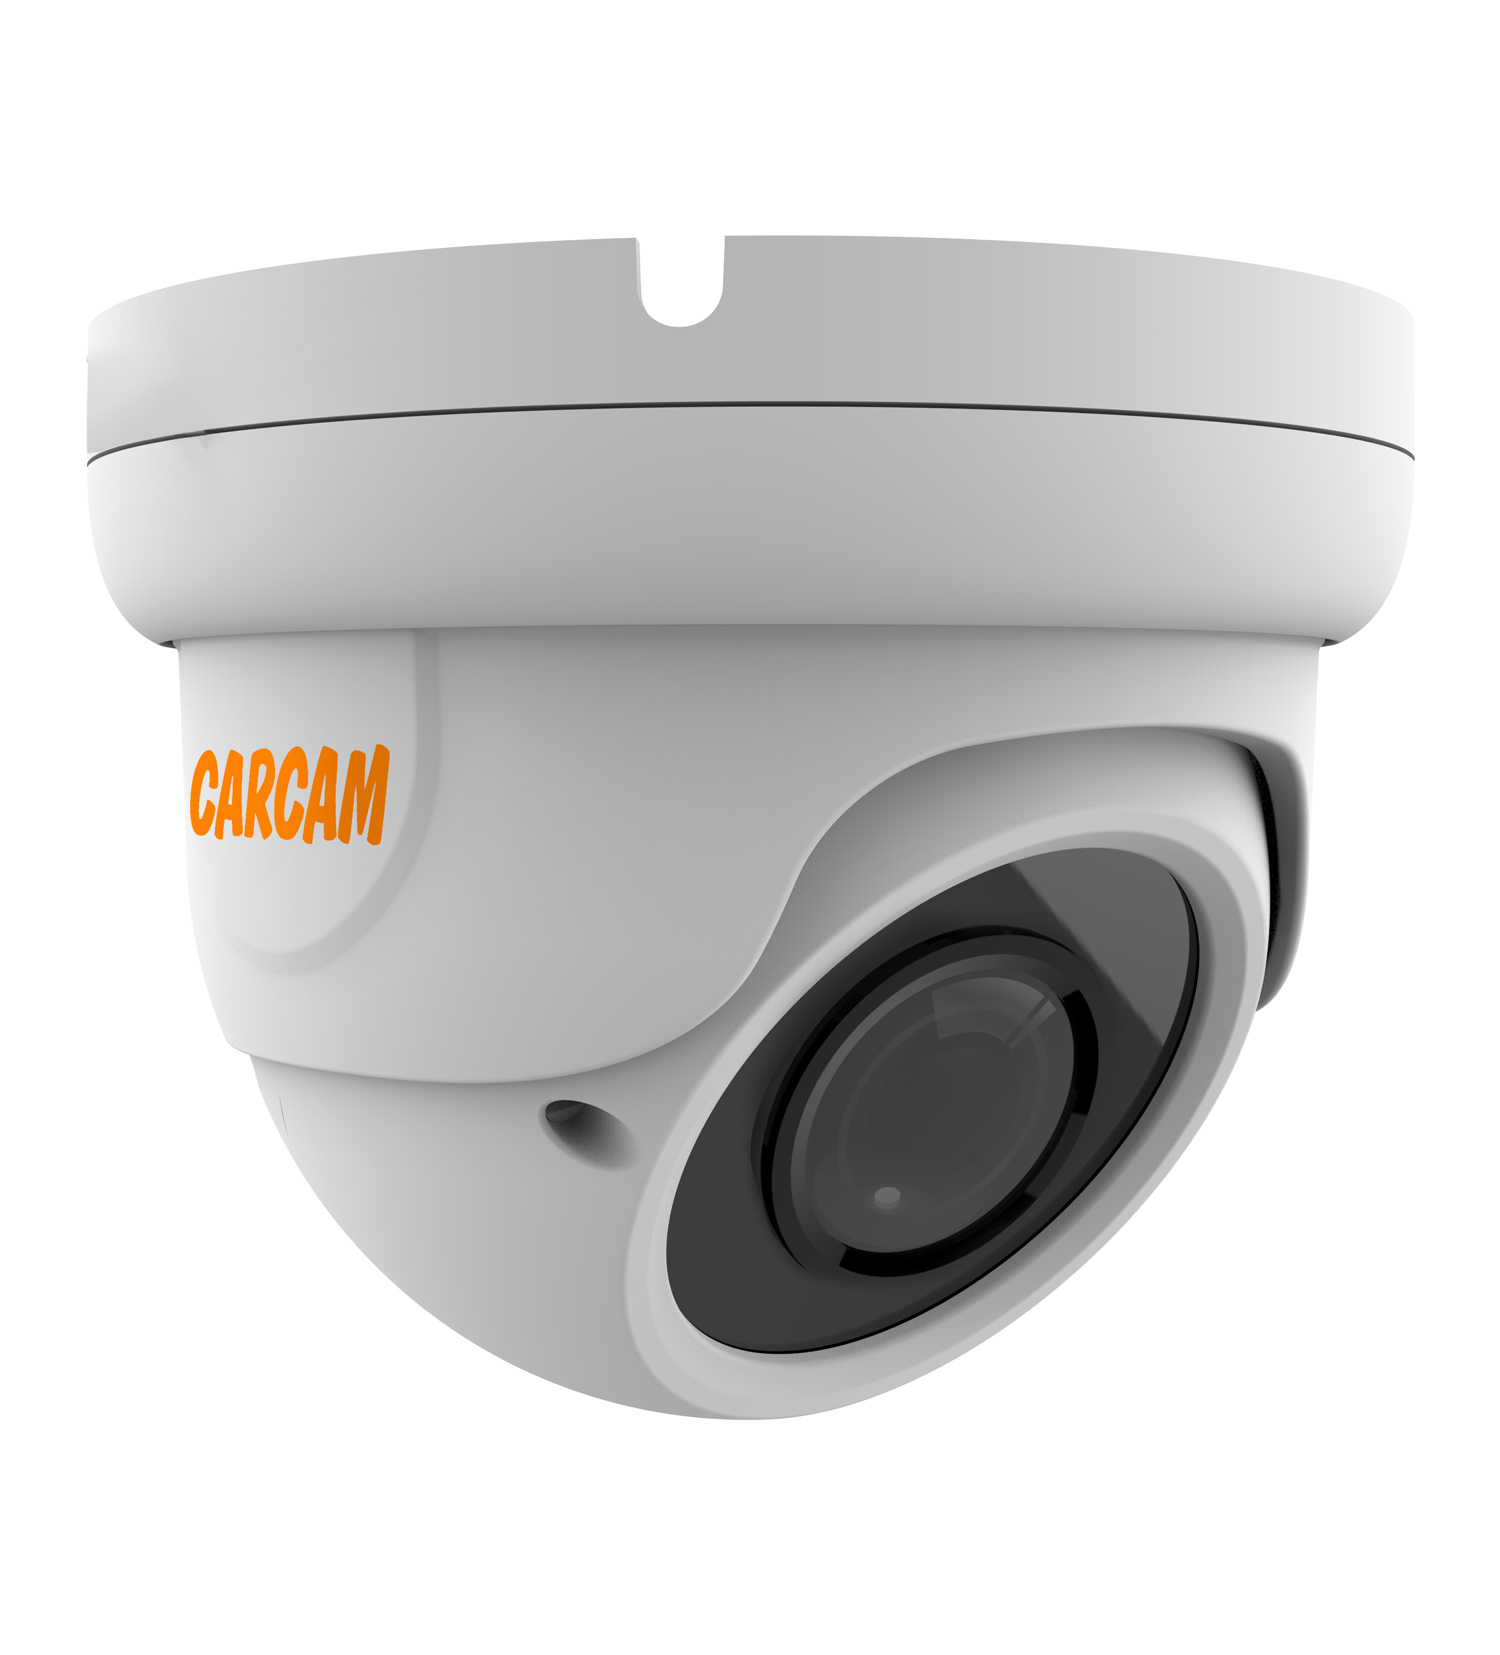 Купольная AHD-камера CARCAM 2MP Dome HD Camera 2041 (2.8-12mm) купольная ip камера carcam 4mp dome ip camera 4067m